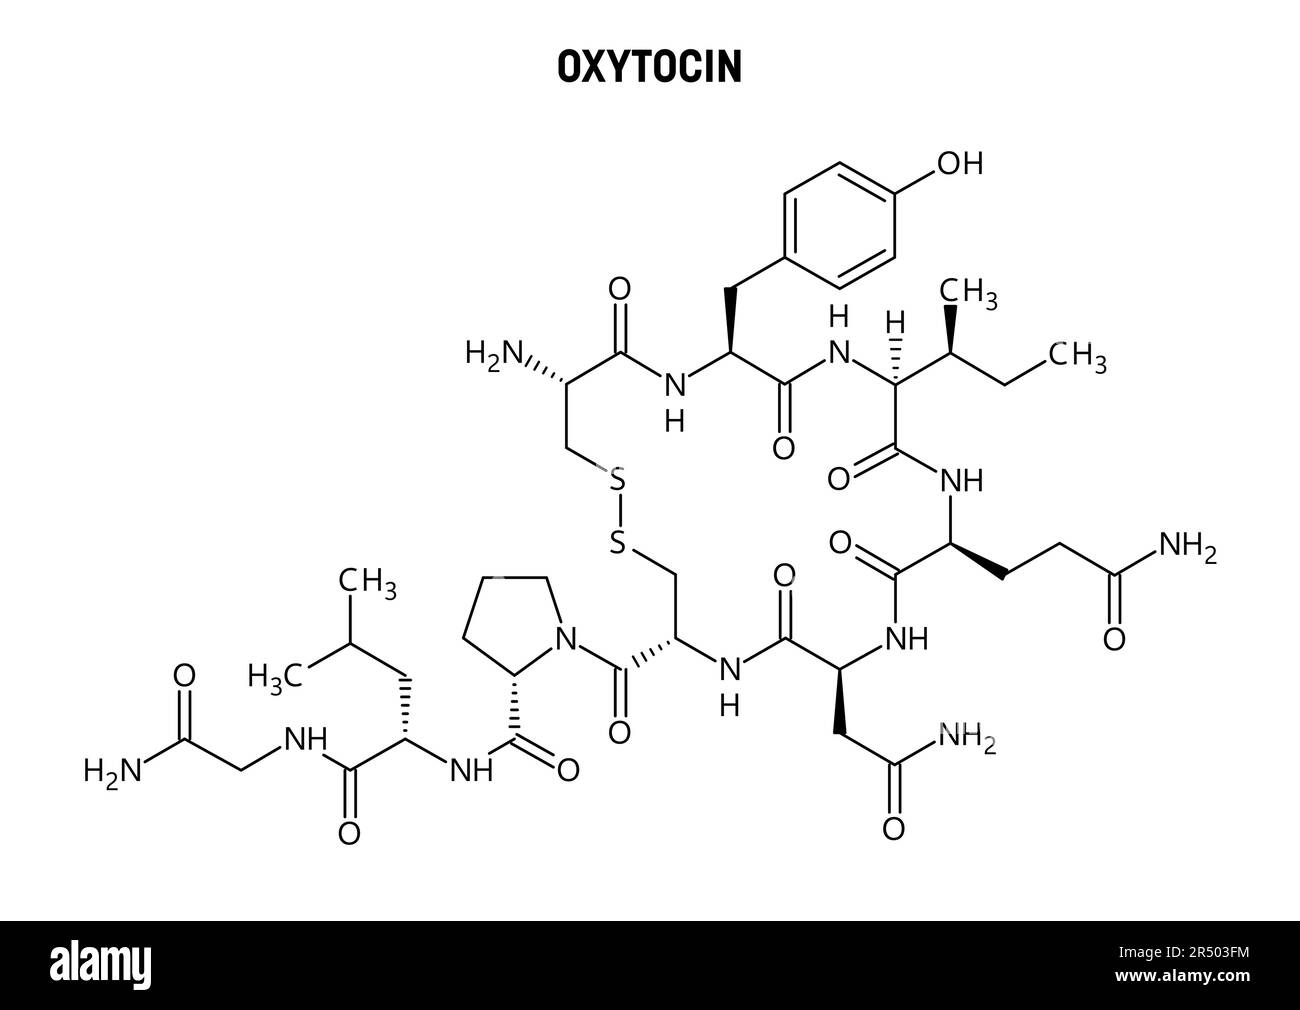 Structure moléculaire de l'oxytocine. L'oxytocine, l'hormone de l'amour, produite dans l'hypothalamus. Rôle important dans la reproduction, l'accouchement et le bondi social Illustration de Vecteur